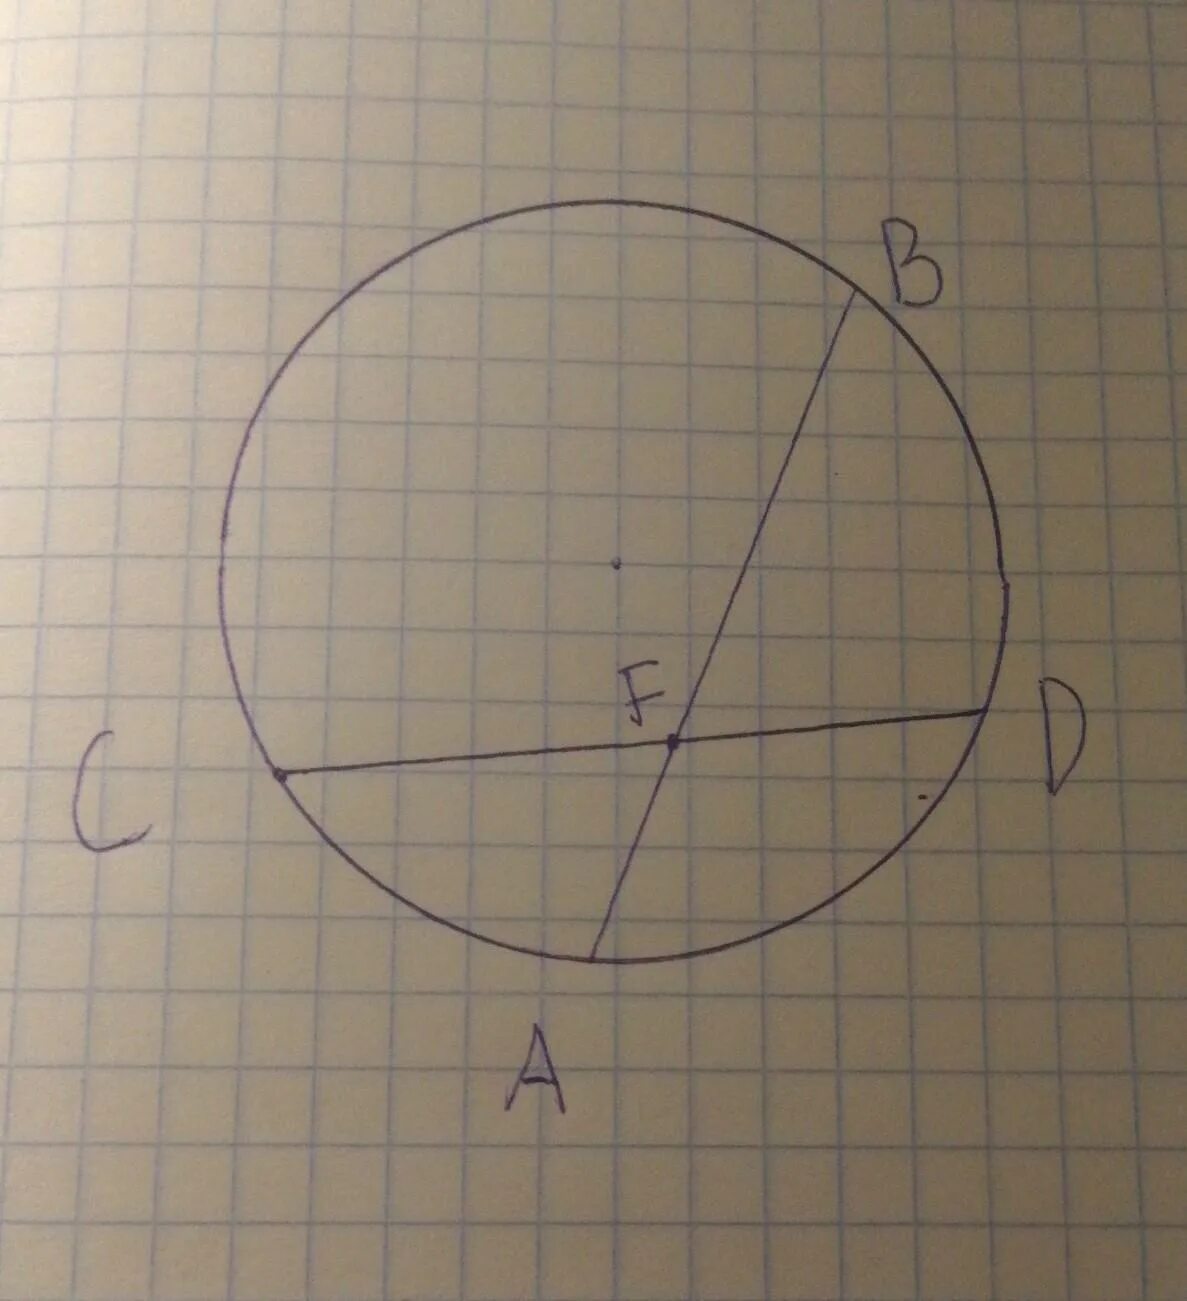 Хорды аб сд пересекаются в точке. Хорды АВ И СД пересекаются в точке f. Хорды АВ И CD пересекаются в точке. Хорды ab и CD пересекаются в точке f так. Хорды ab и CD окружности пересекаются в точке f.